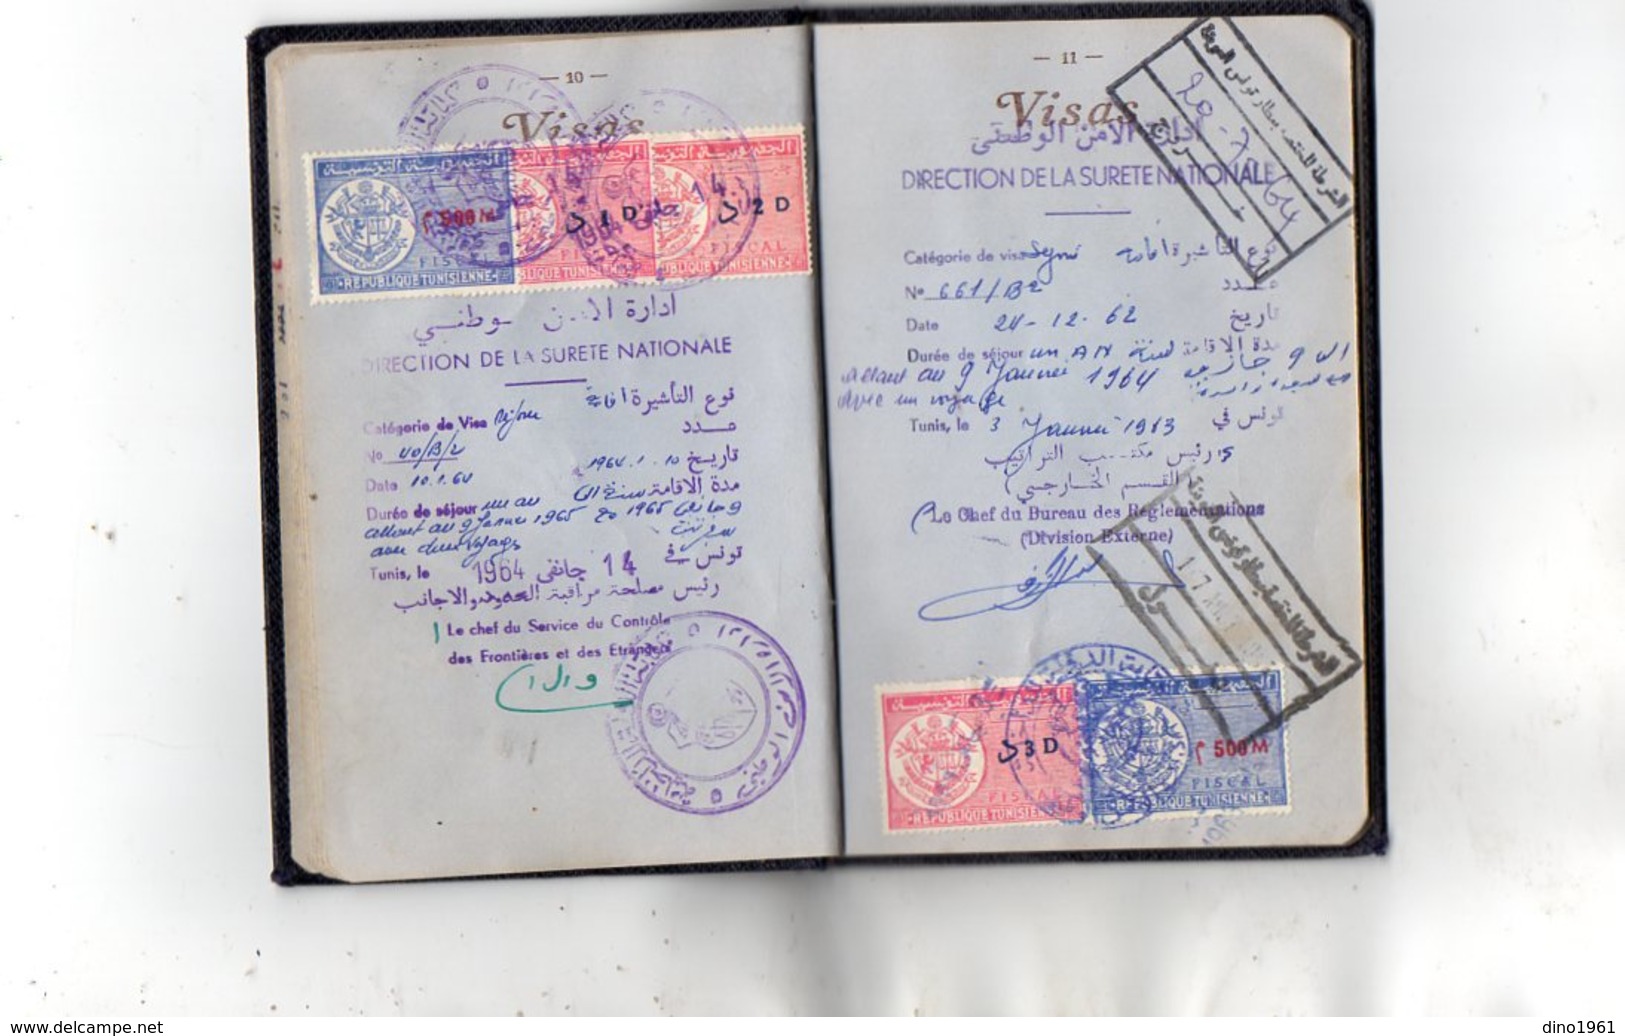 VP12.819 - MARSEILLE 1961 - Passeport - Mr M. BUENO né à TUNIS en 1944